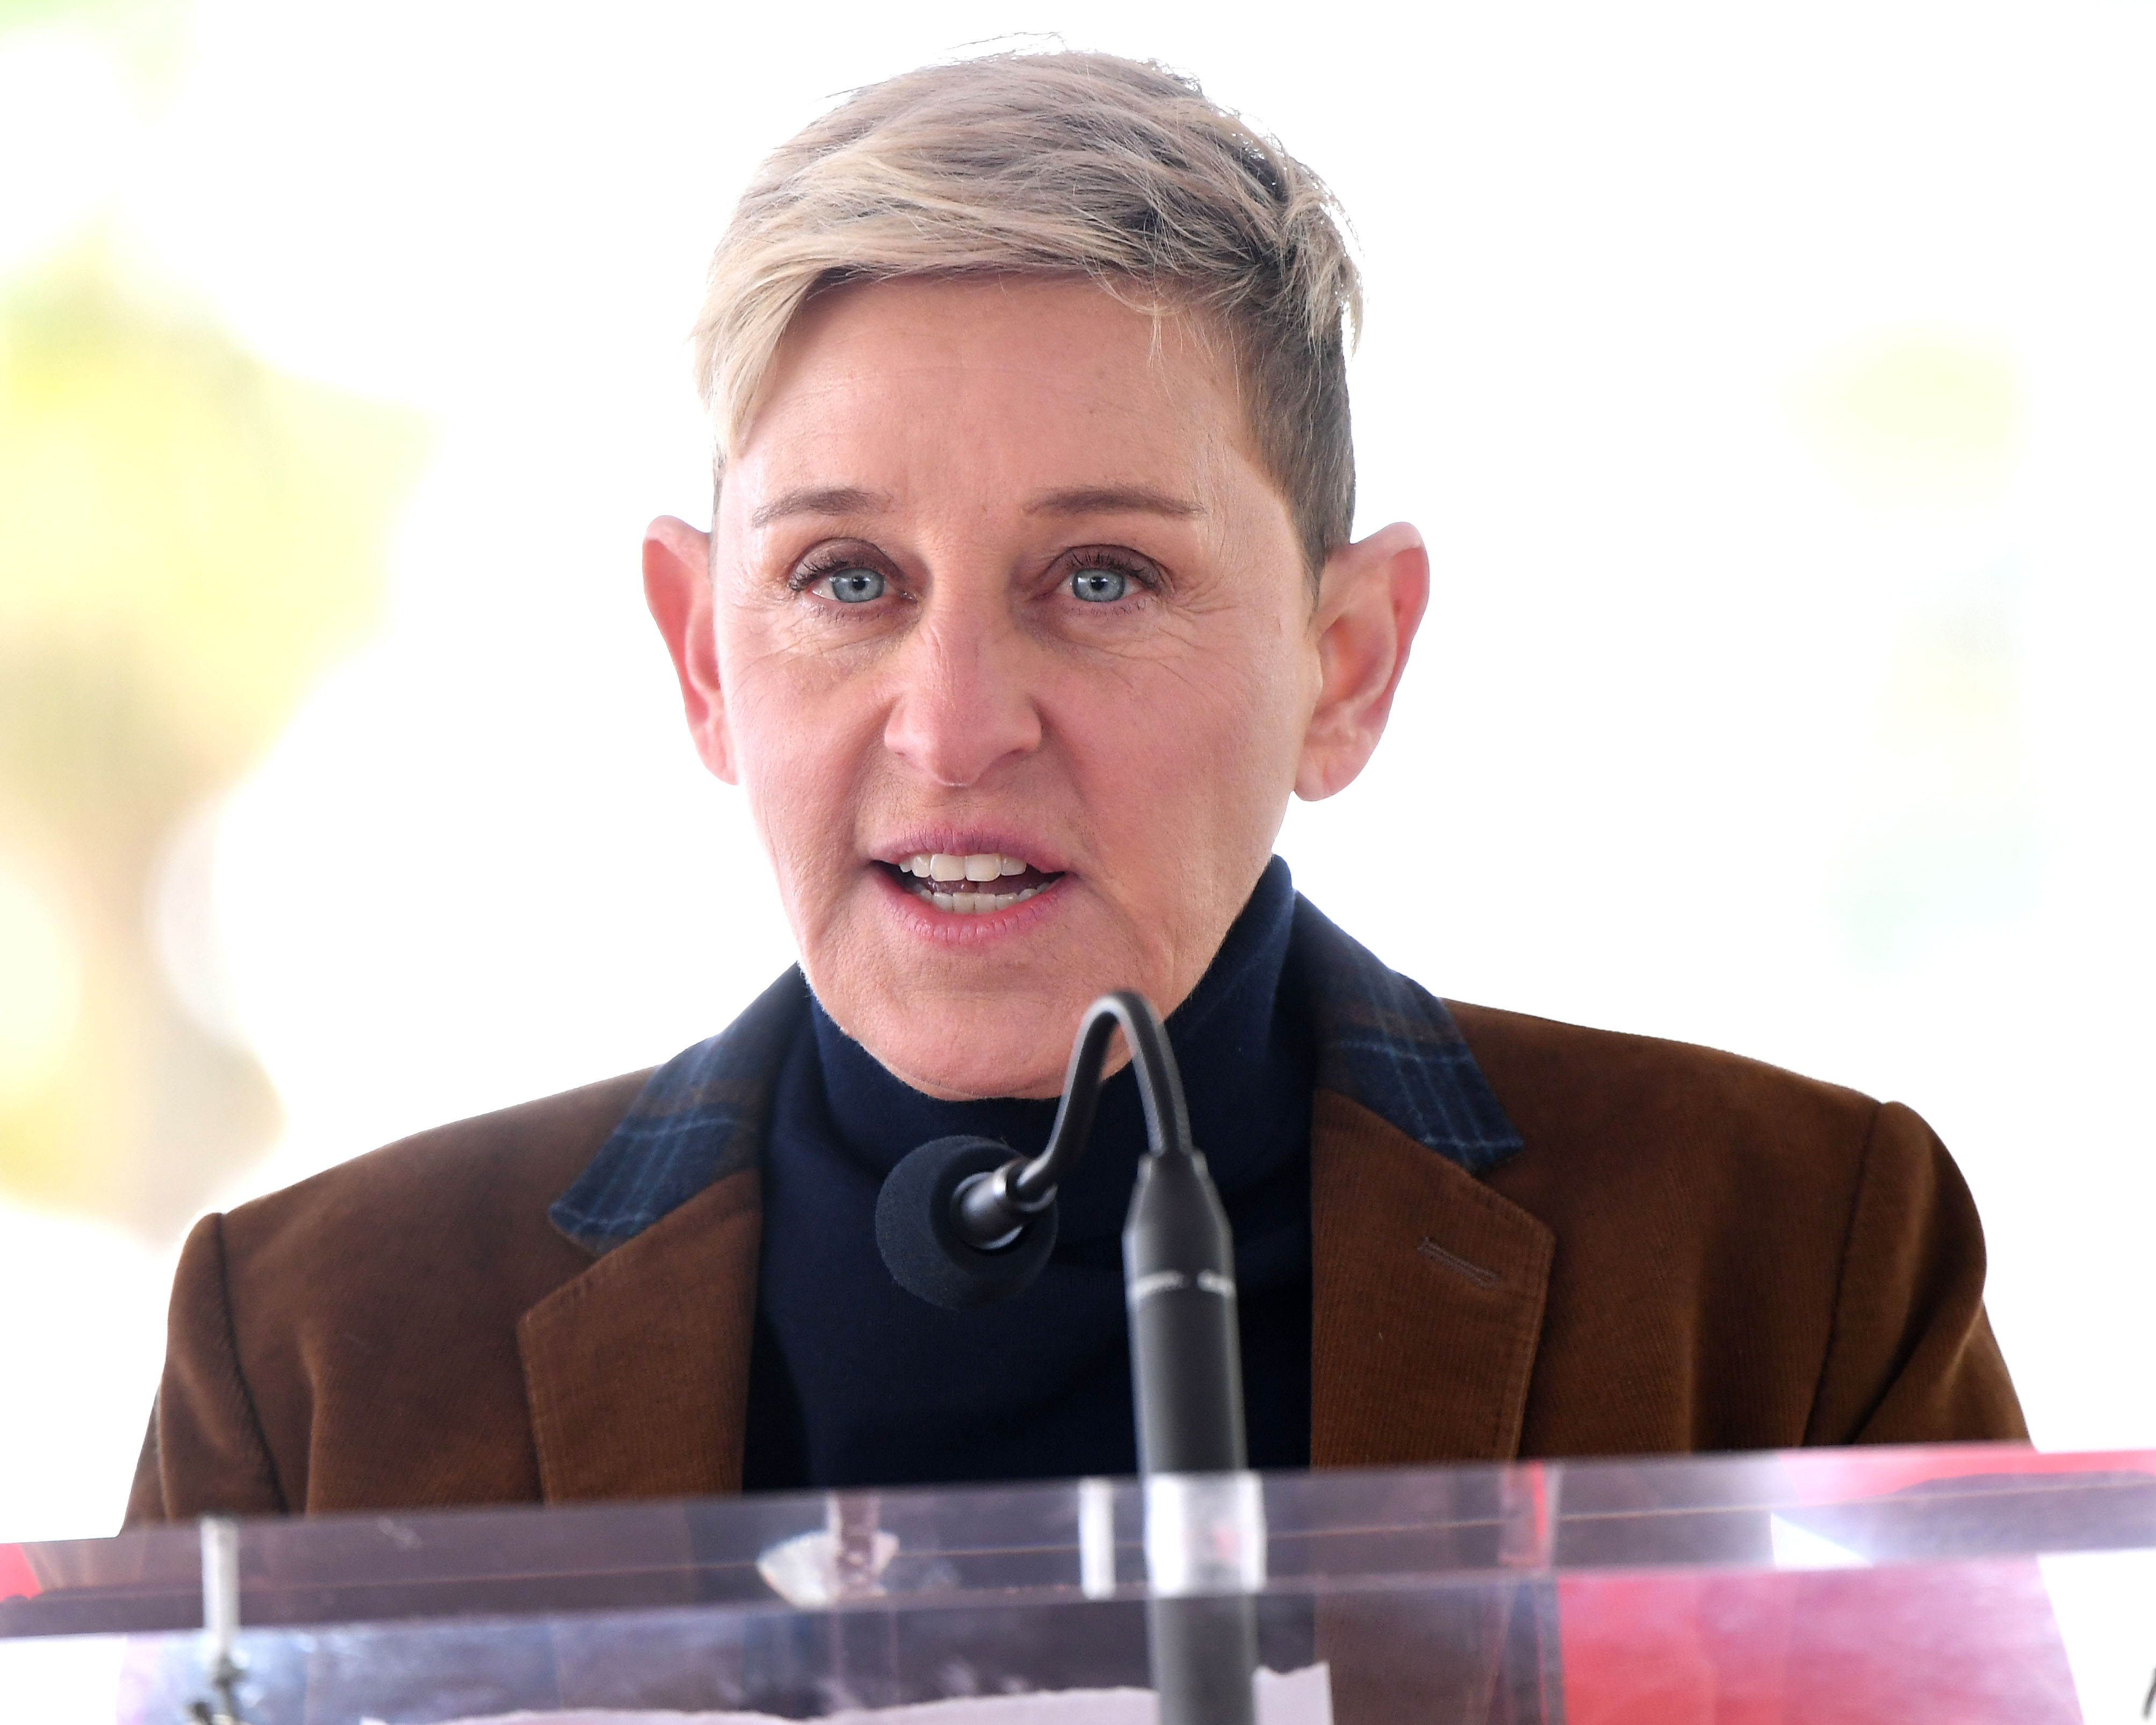 Ellen DeGeneres at an event